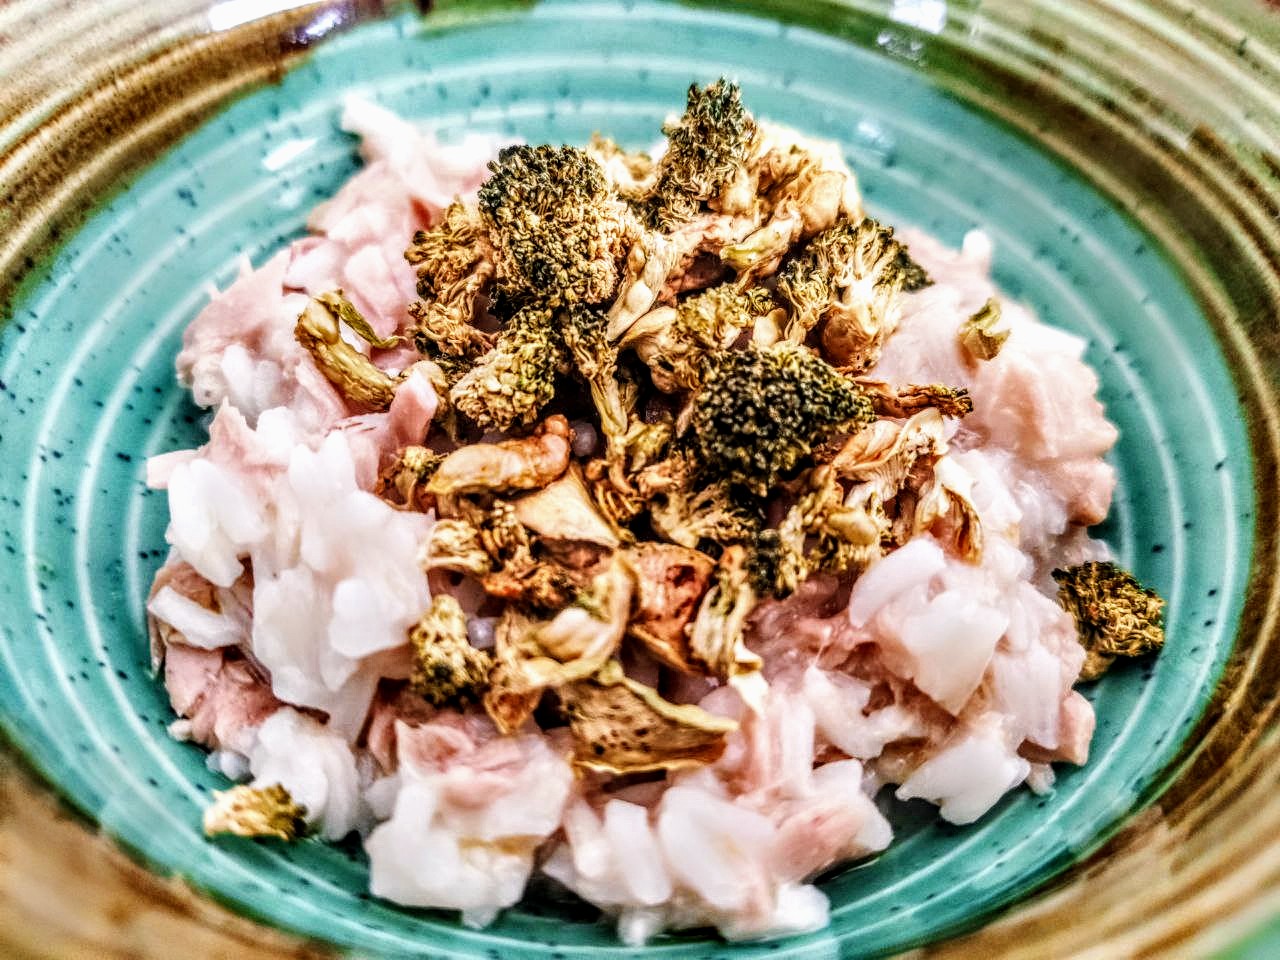 Ricette senza glutine e senza lattosio: riso con filetti di tonno e broccoli